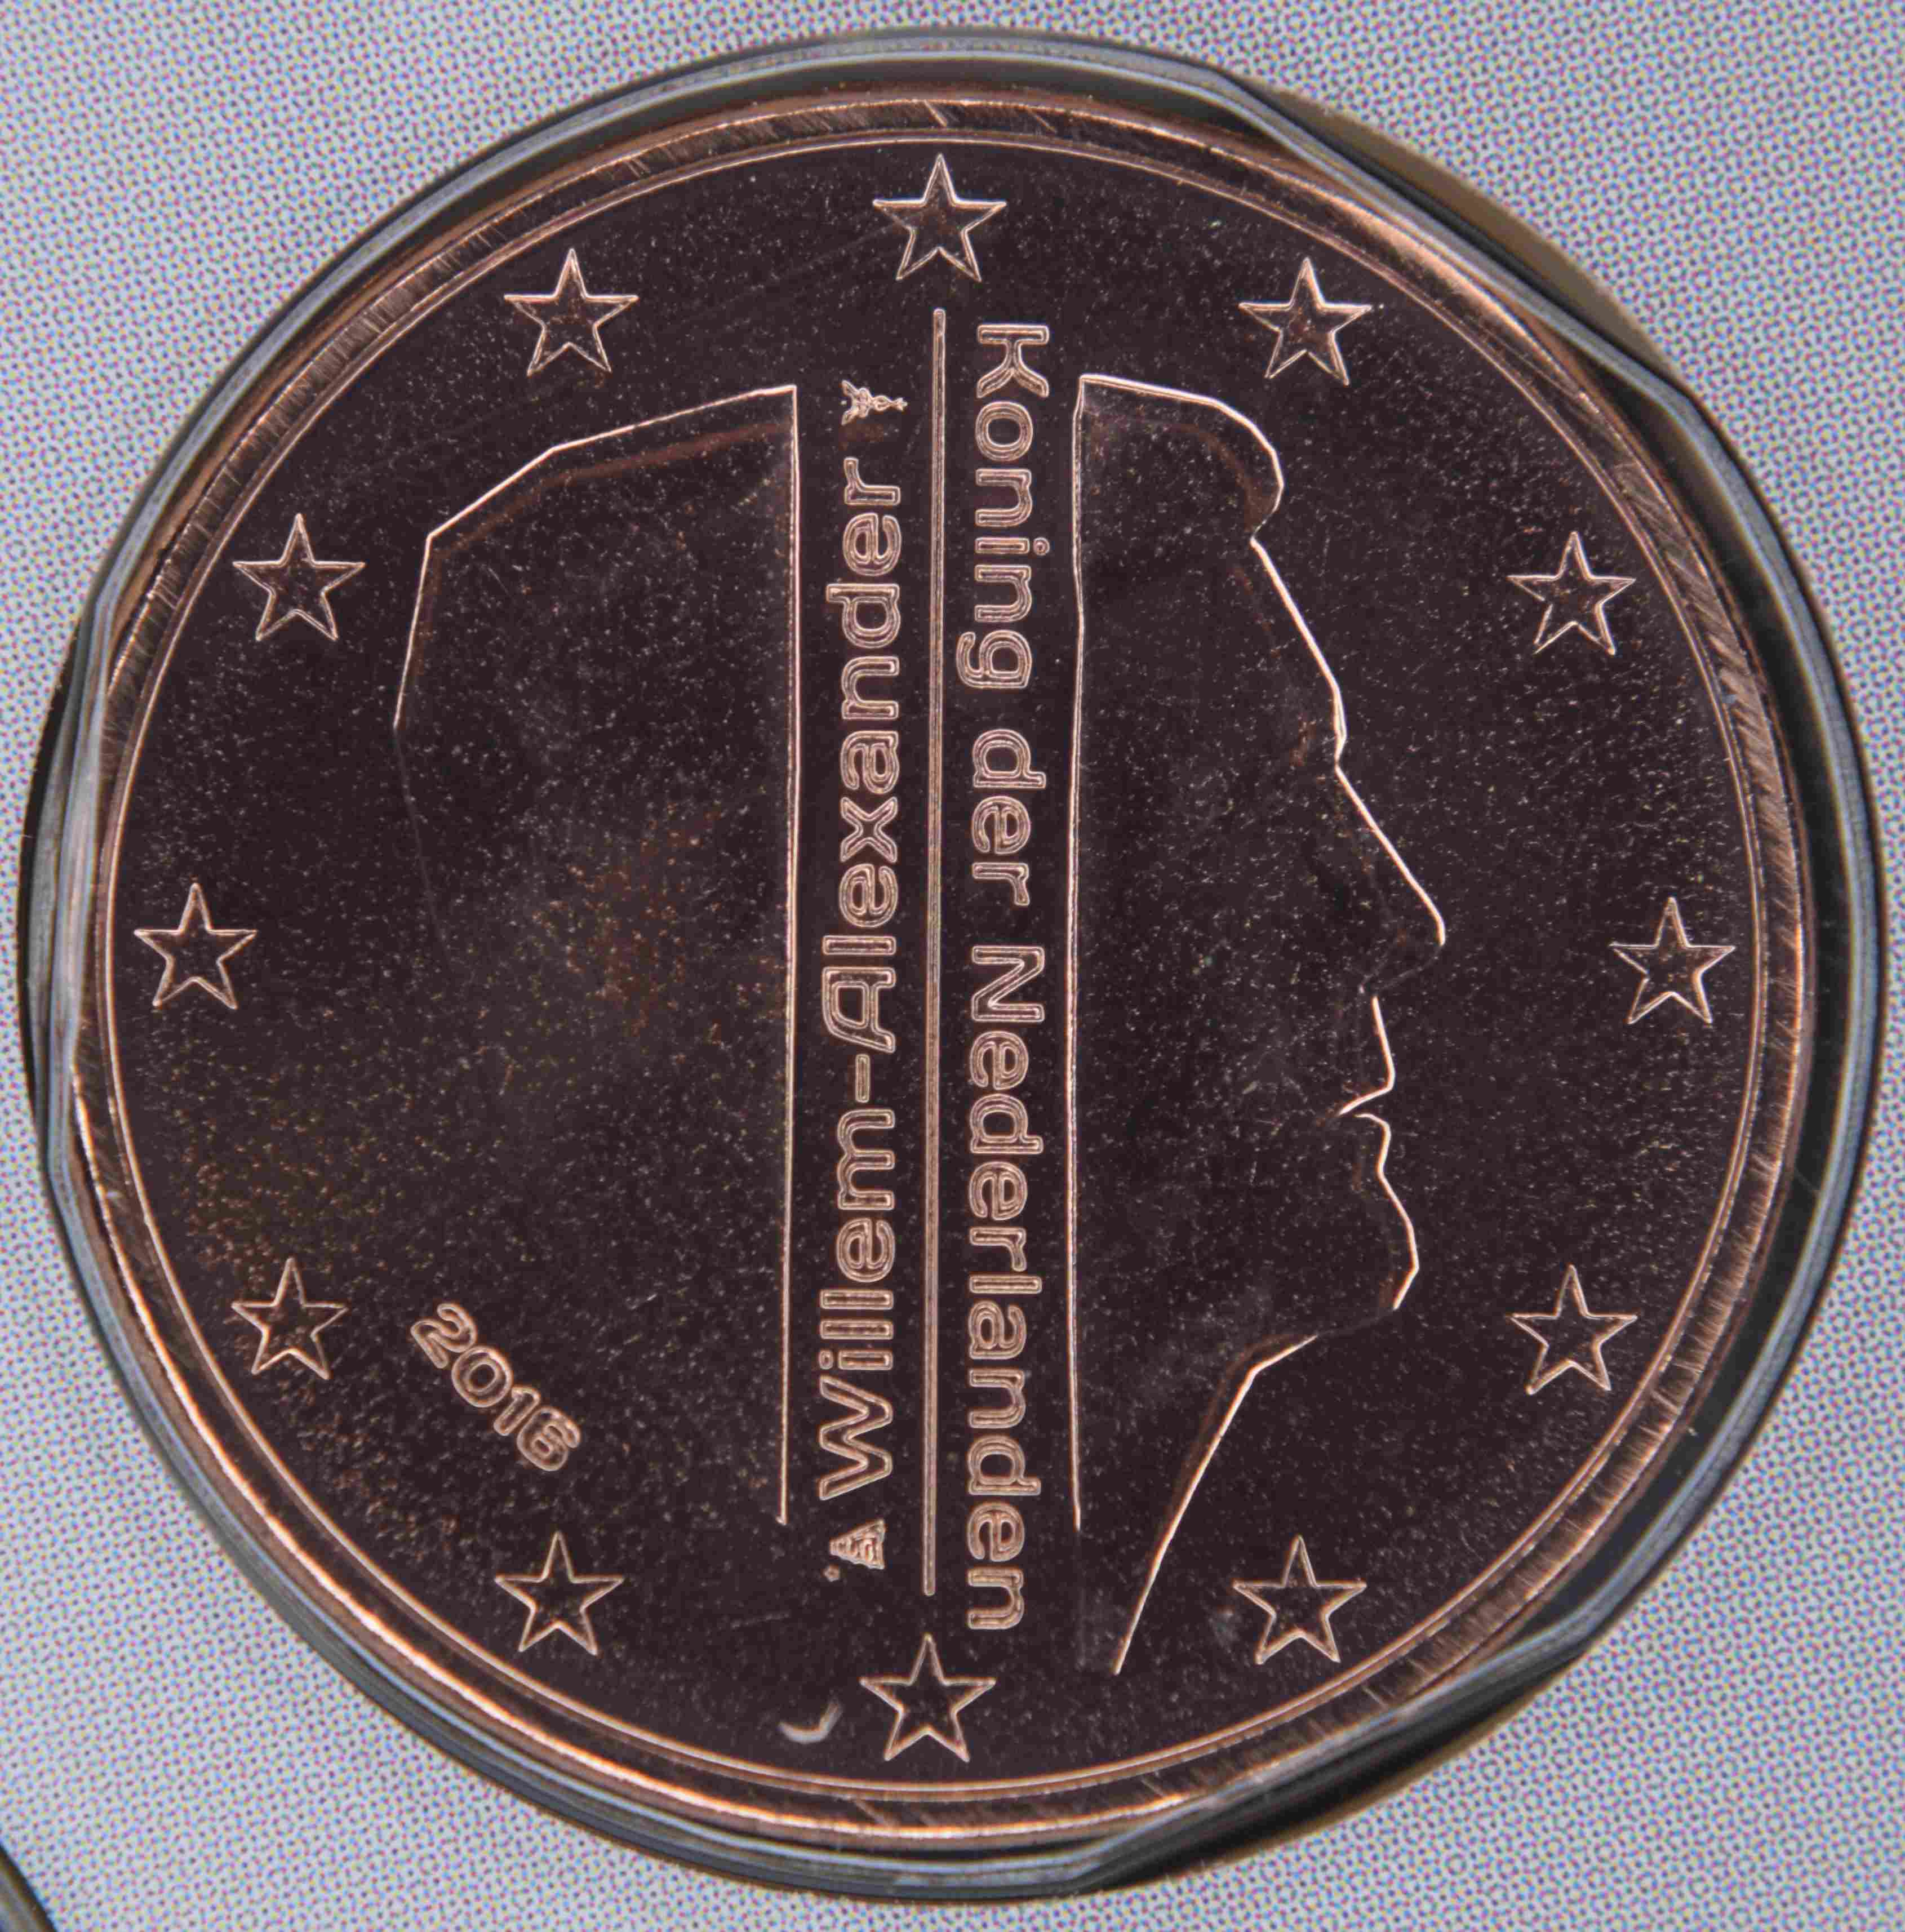 Niederlande 5 Cent Münze 2016 - euro-muenzen.tv - Der Online Euromünzen